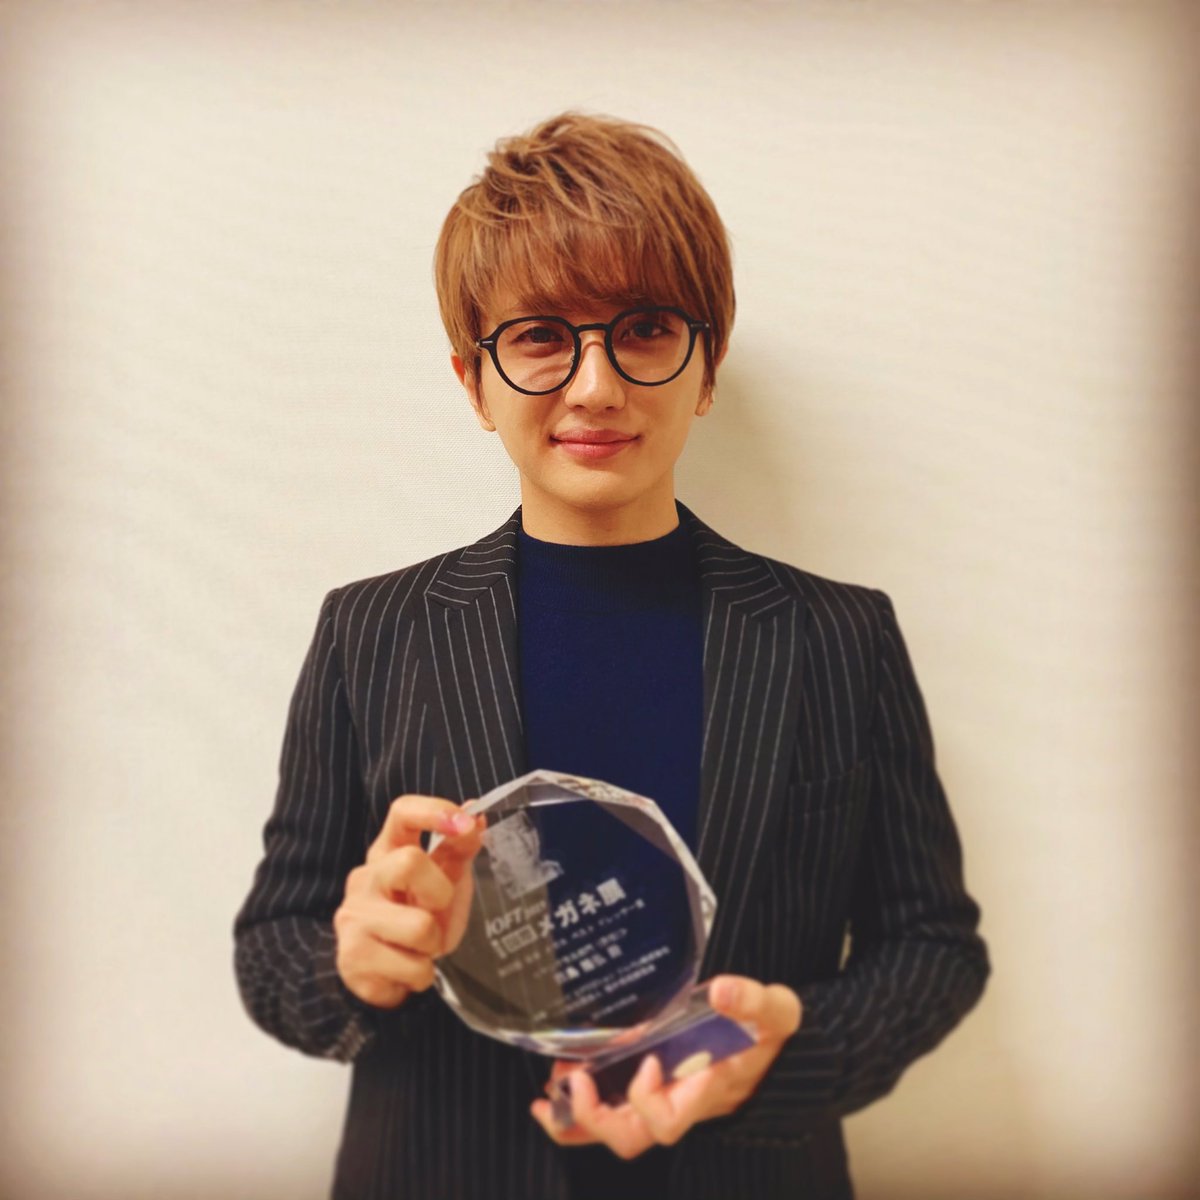 Nissy Staff 本日は 日本 メガネ ベストドレッサー賞 の授賞式に参加させて頂きました ありがとうございました そして 受賞を記念して作ったオリジナルサングラス メガネが少数ではございますが本日から再販売がstartしております T Co